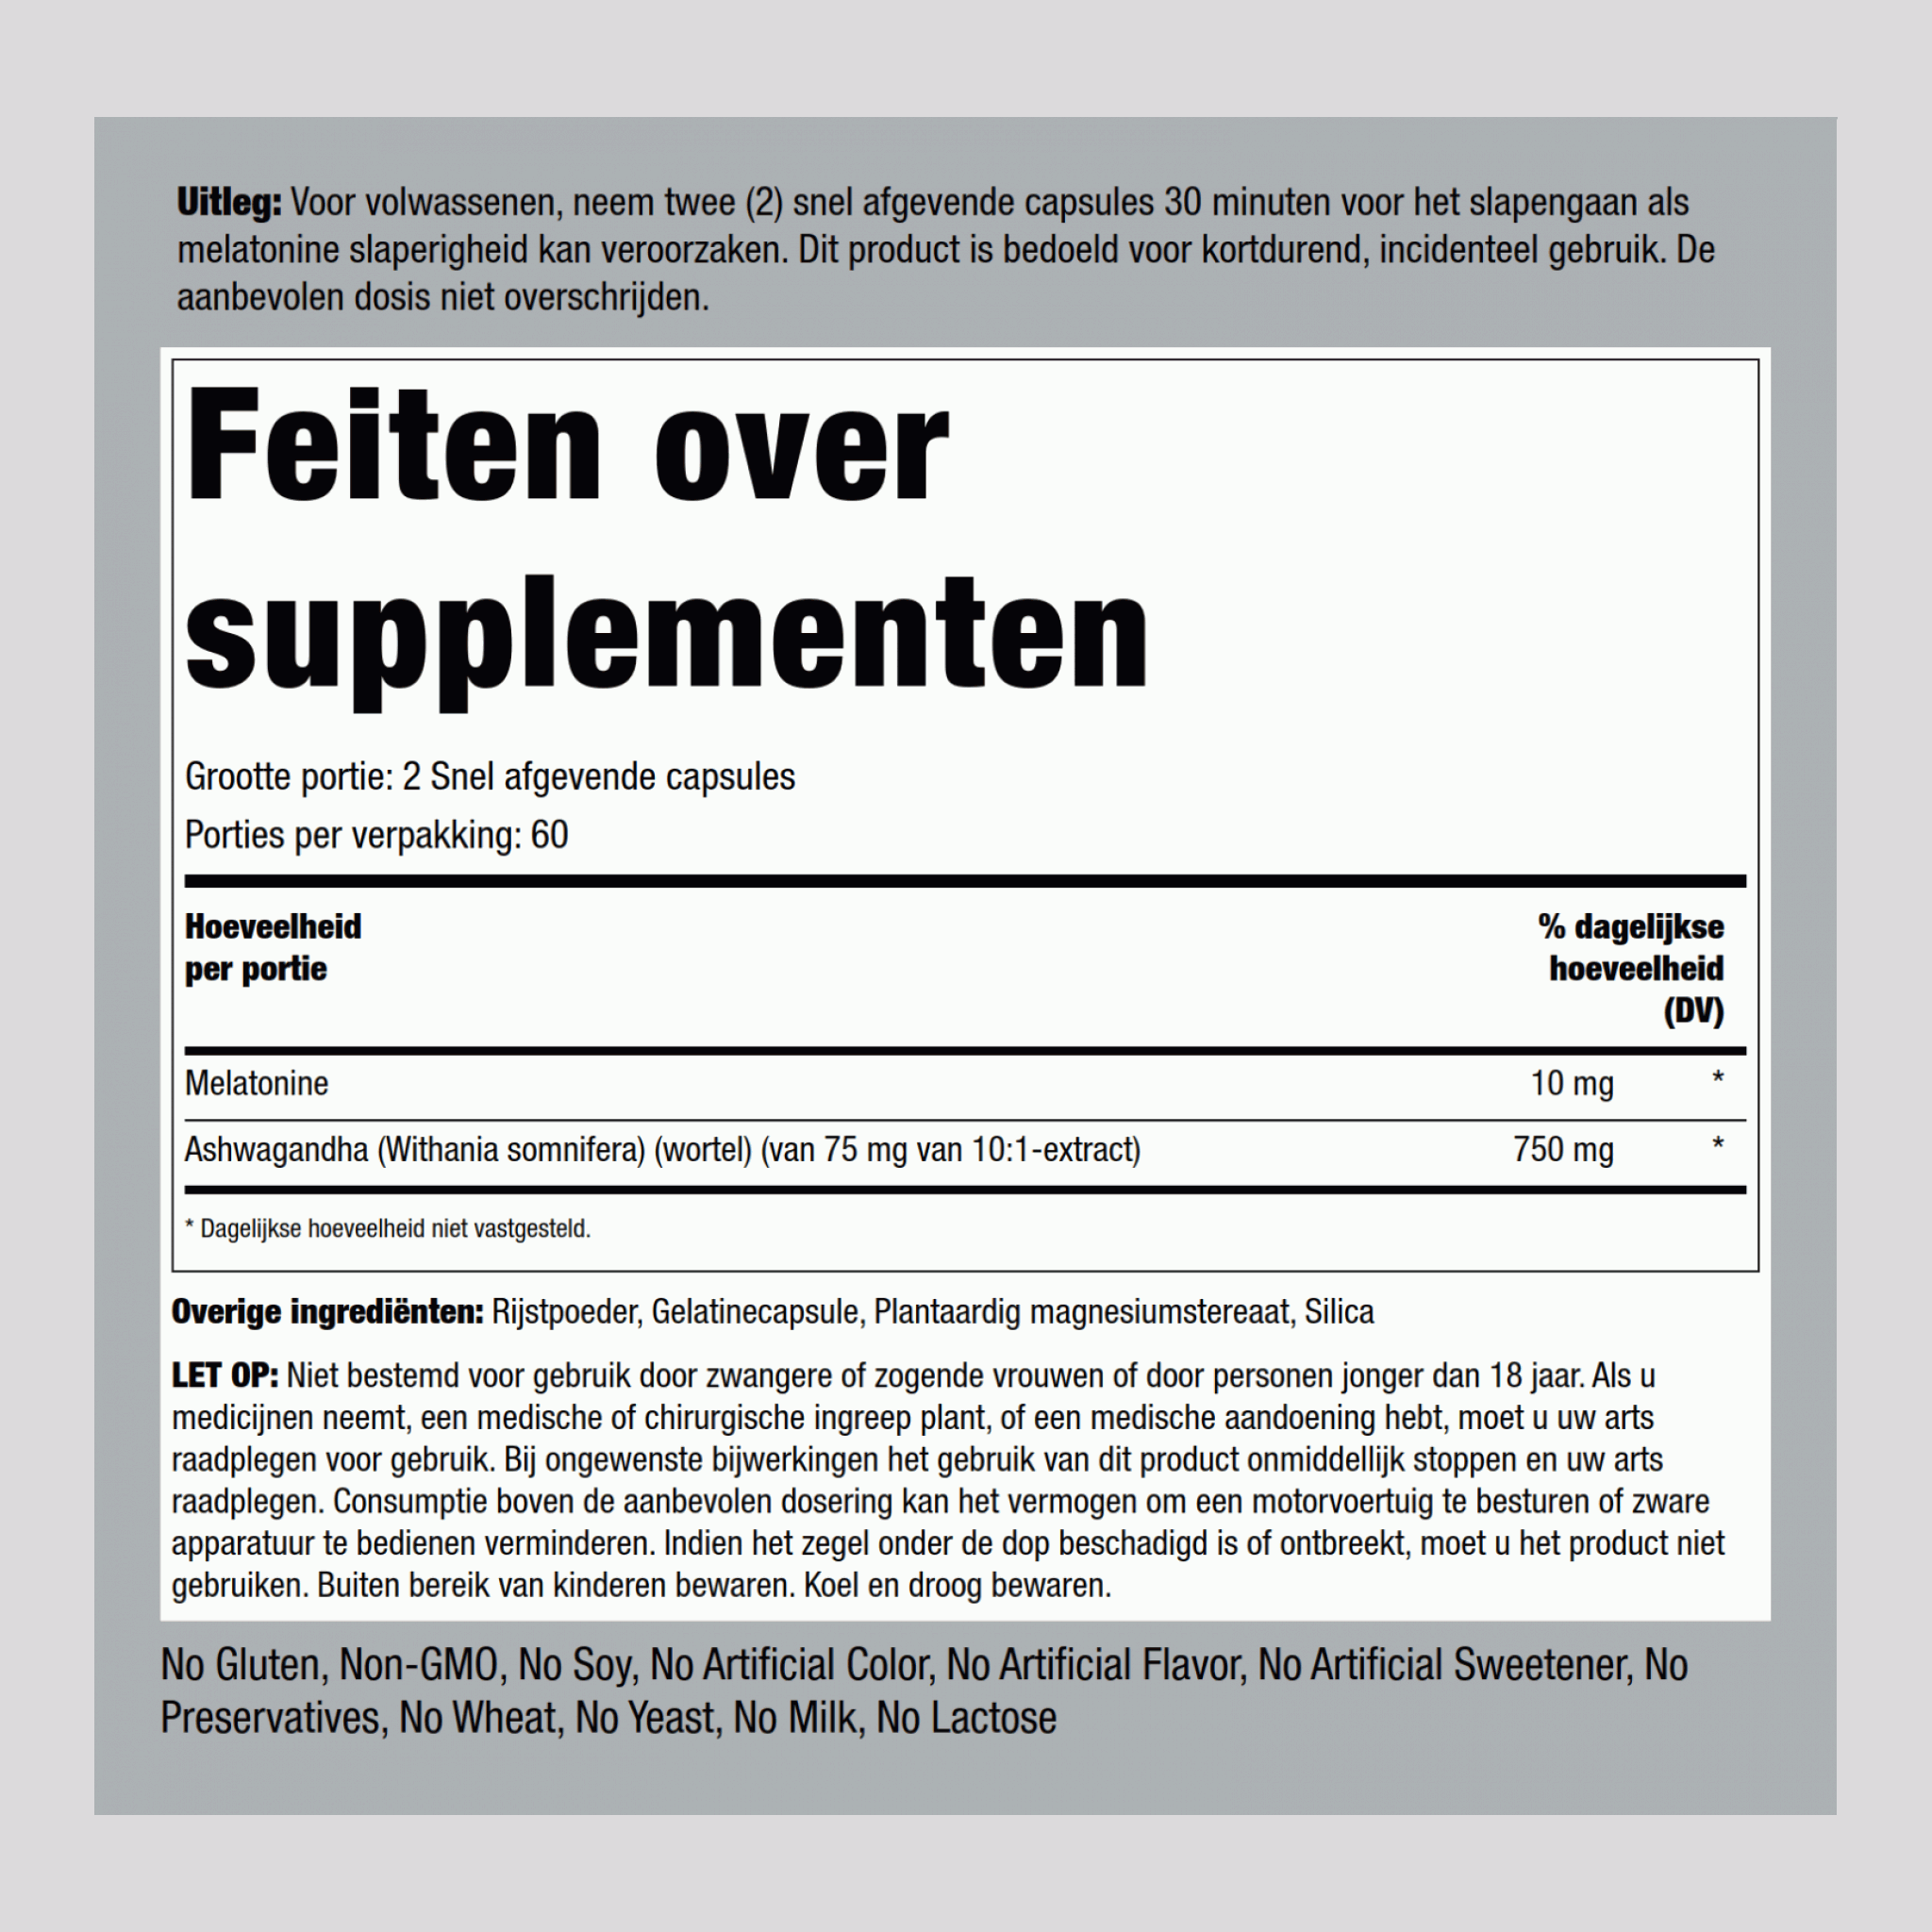 Melatonin Plus Ashwagandha, 10 mg (per serving), 120 Quick Release Capsules